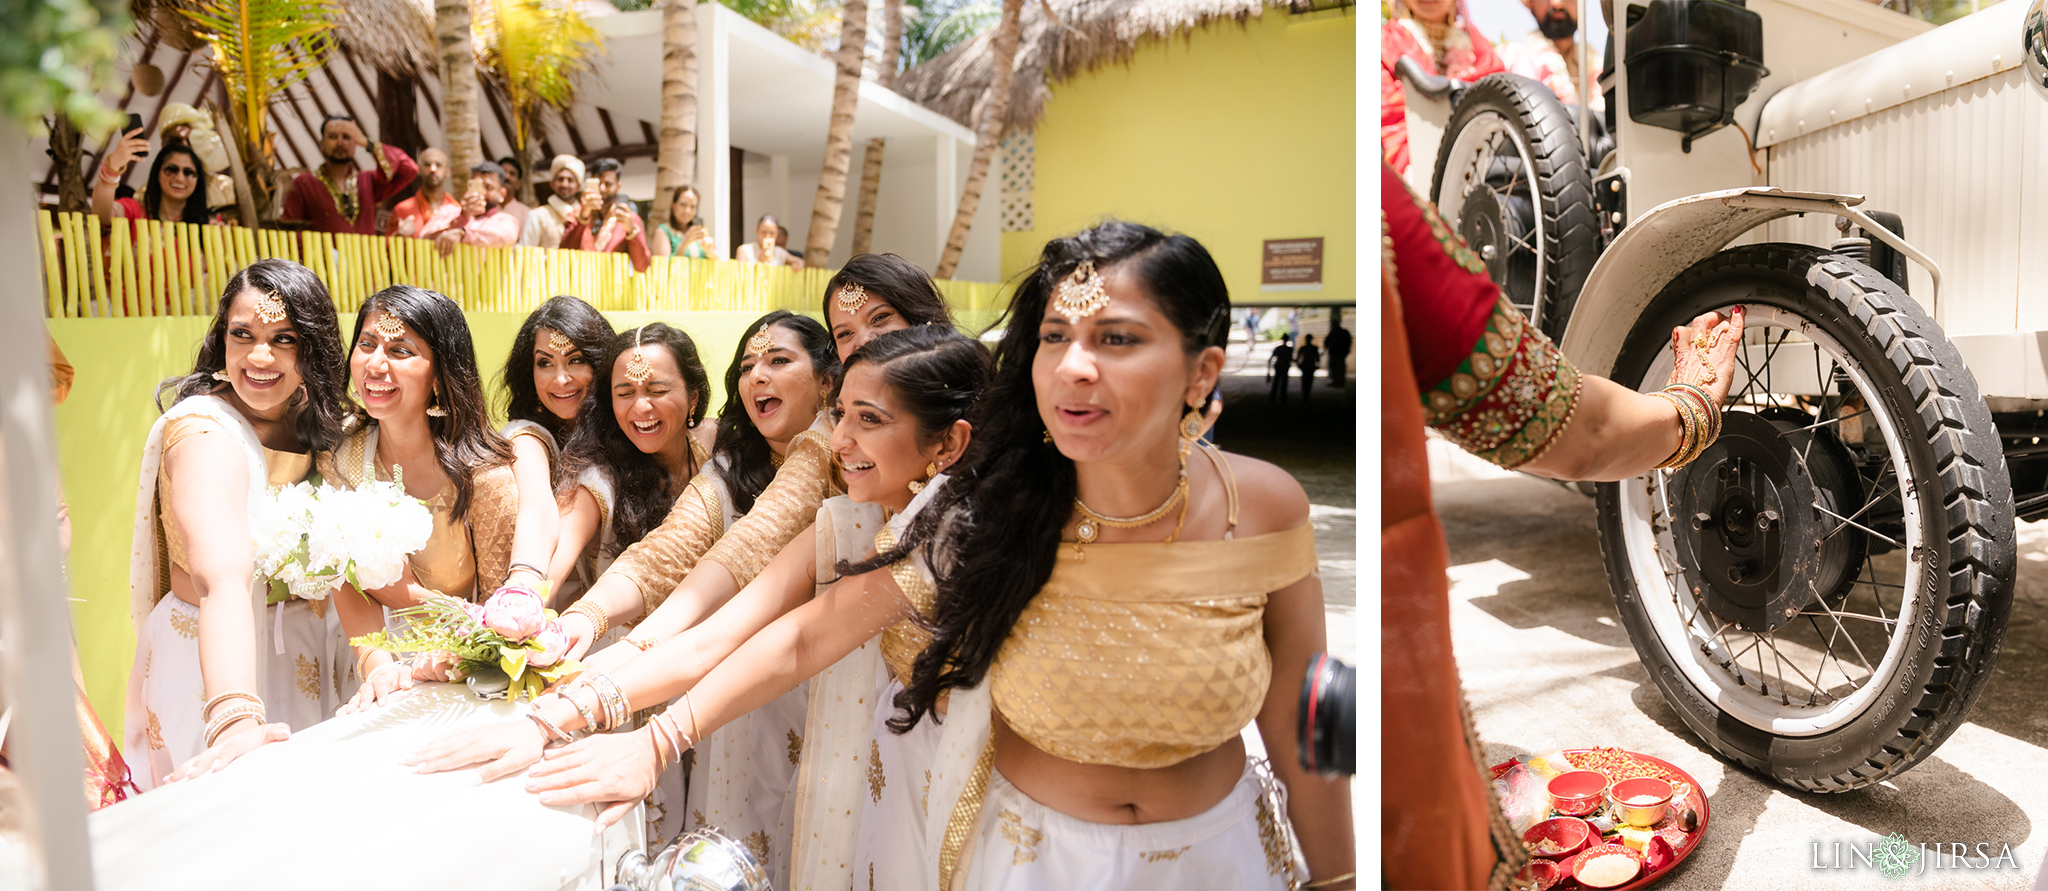 39 Generations El Dorado Royale Cancun Mexico Indian Wedding Photography